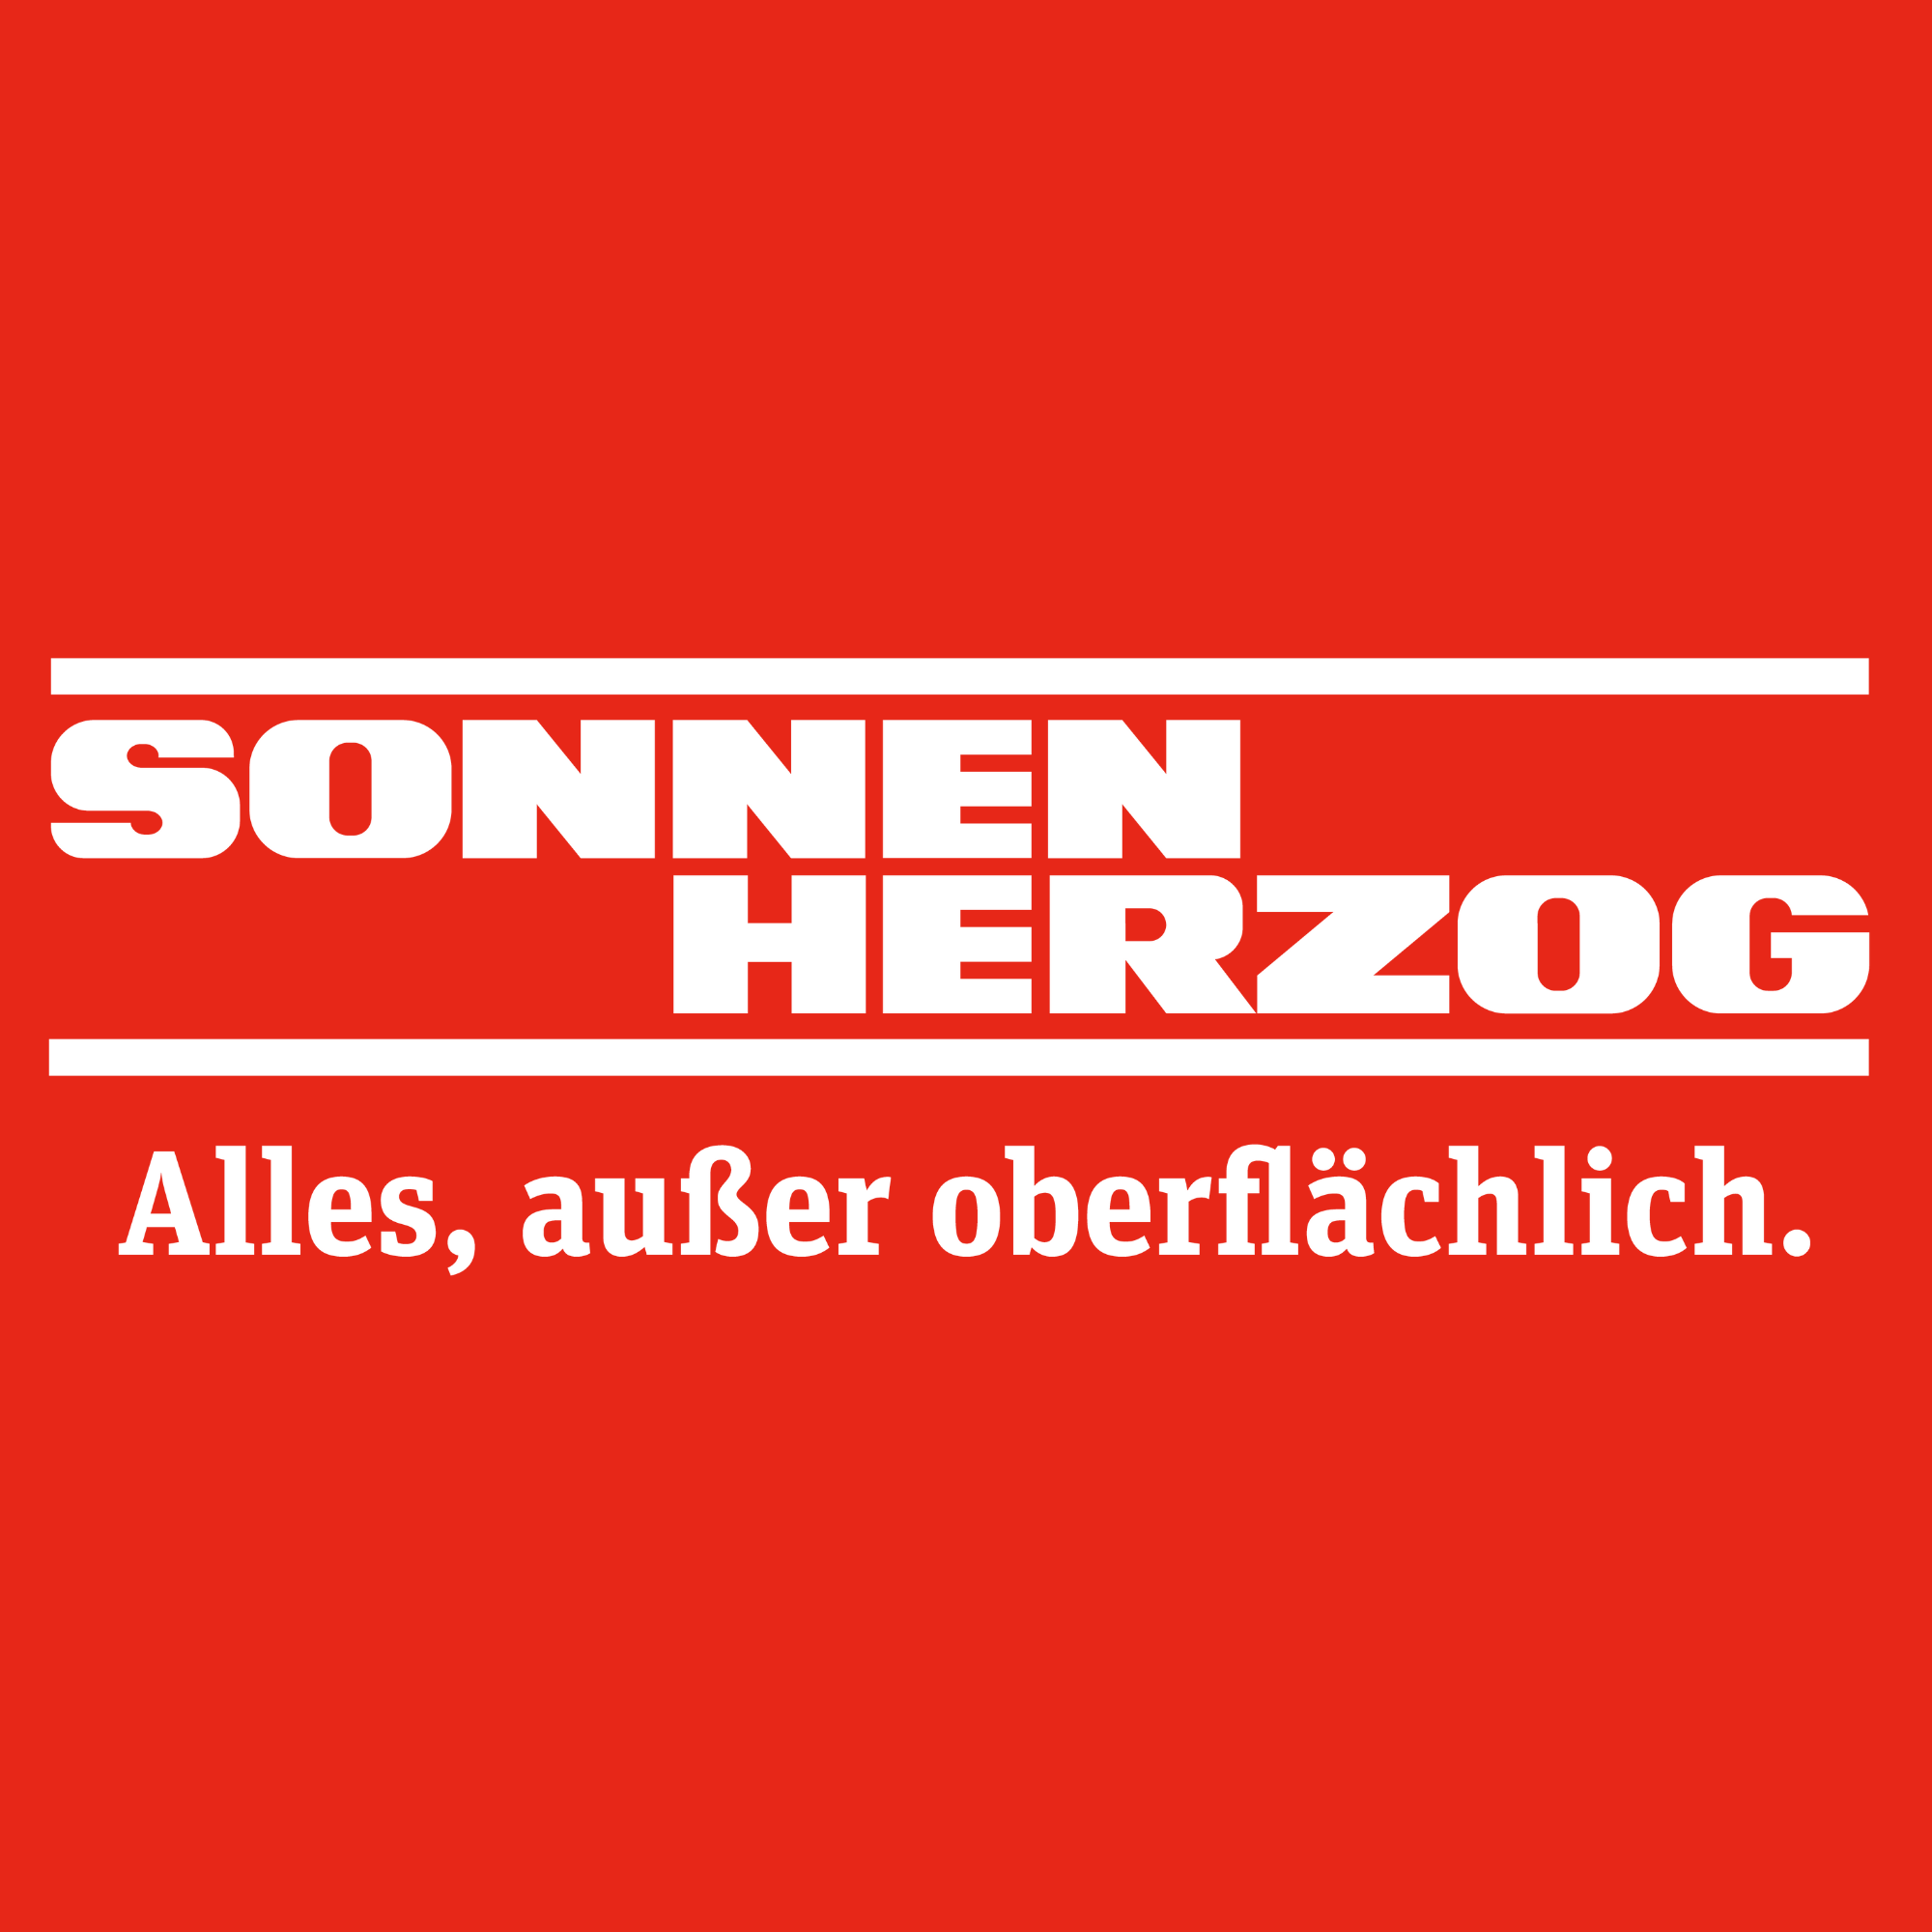 Sonnen Herzog GmbH & Co. KG in Düsseldorf - Logo